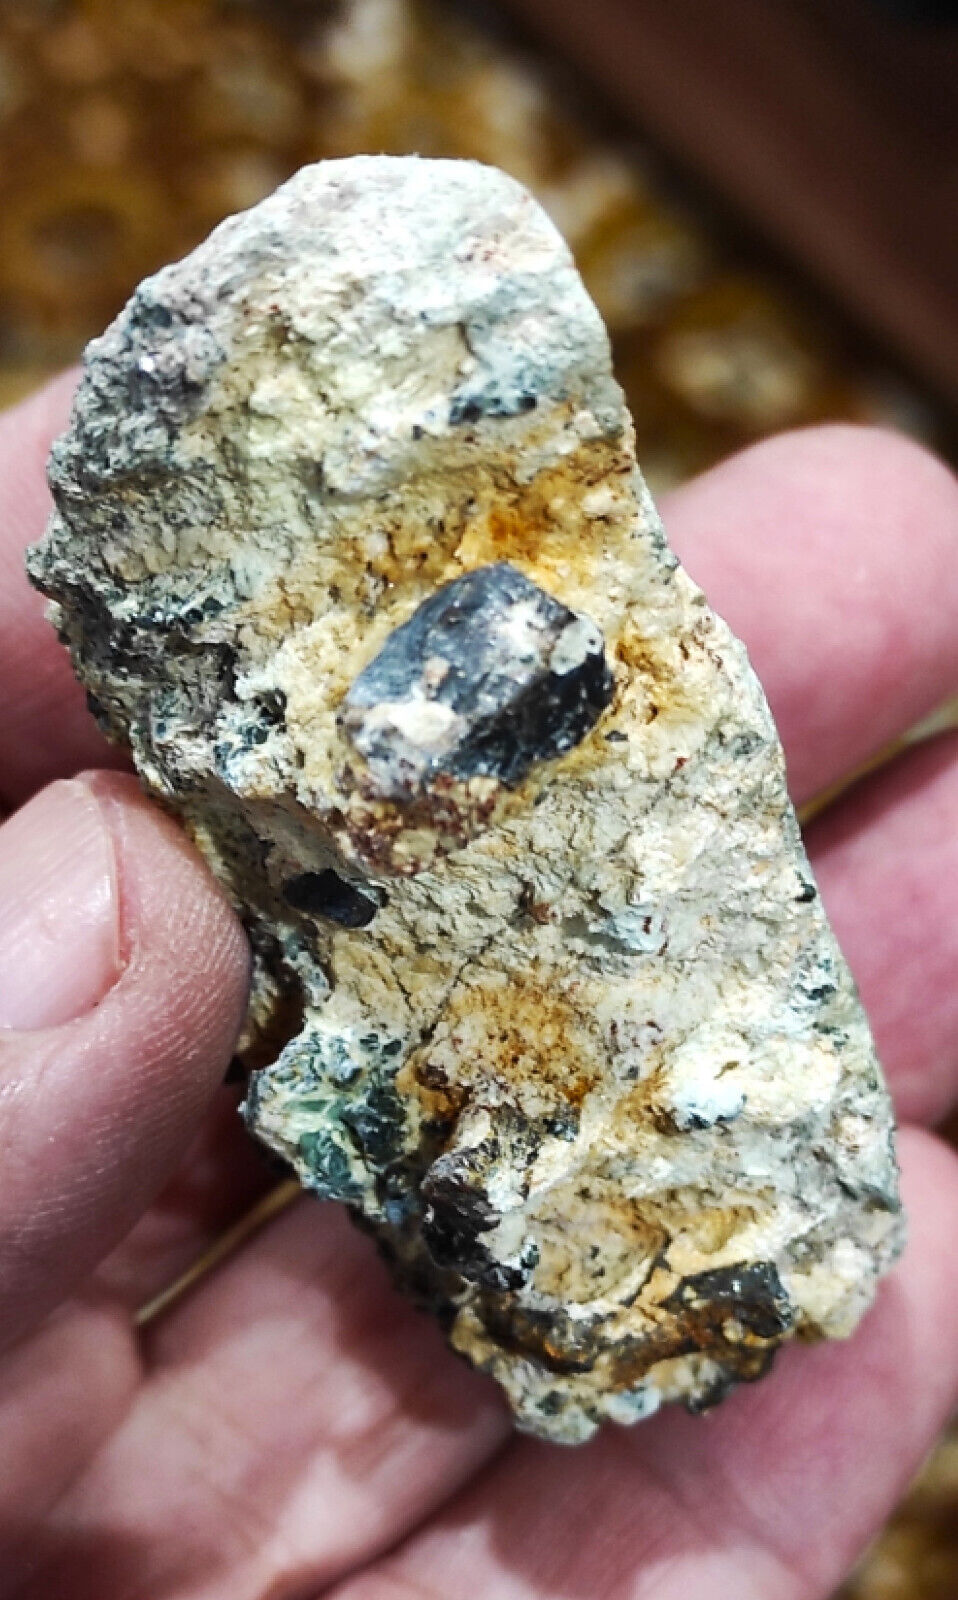 Amazing Rare Black Perovskite Crystals with Green Clinichlore in Albite